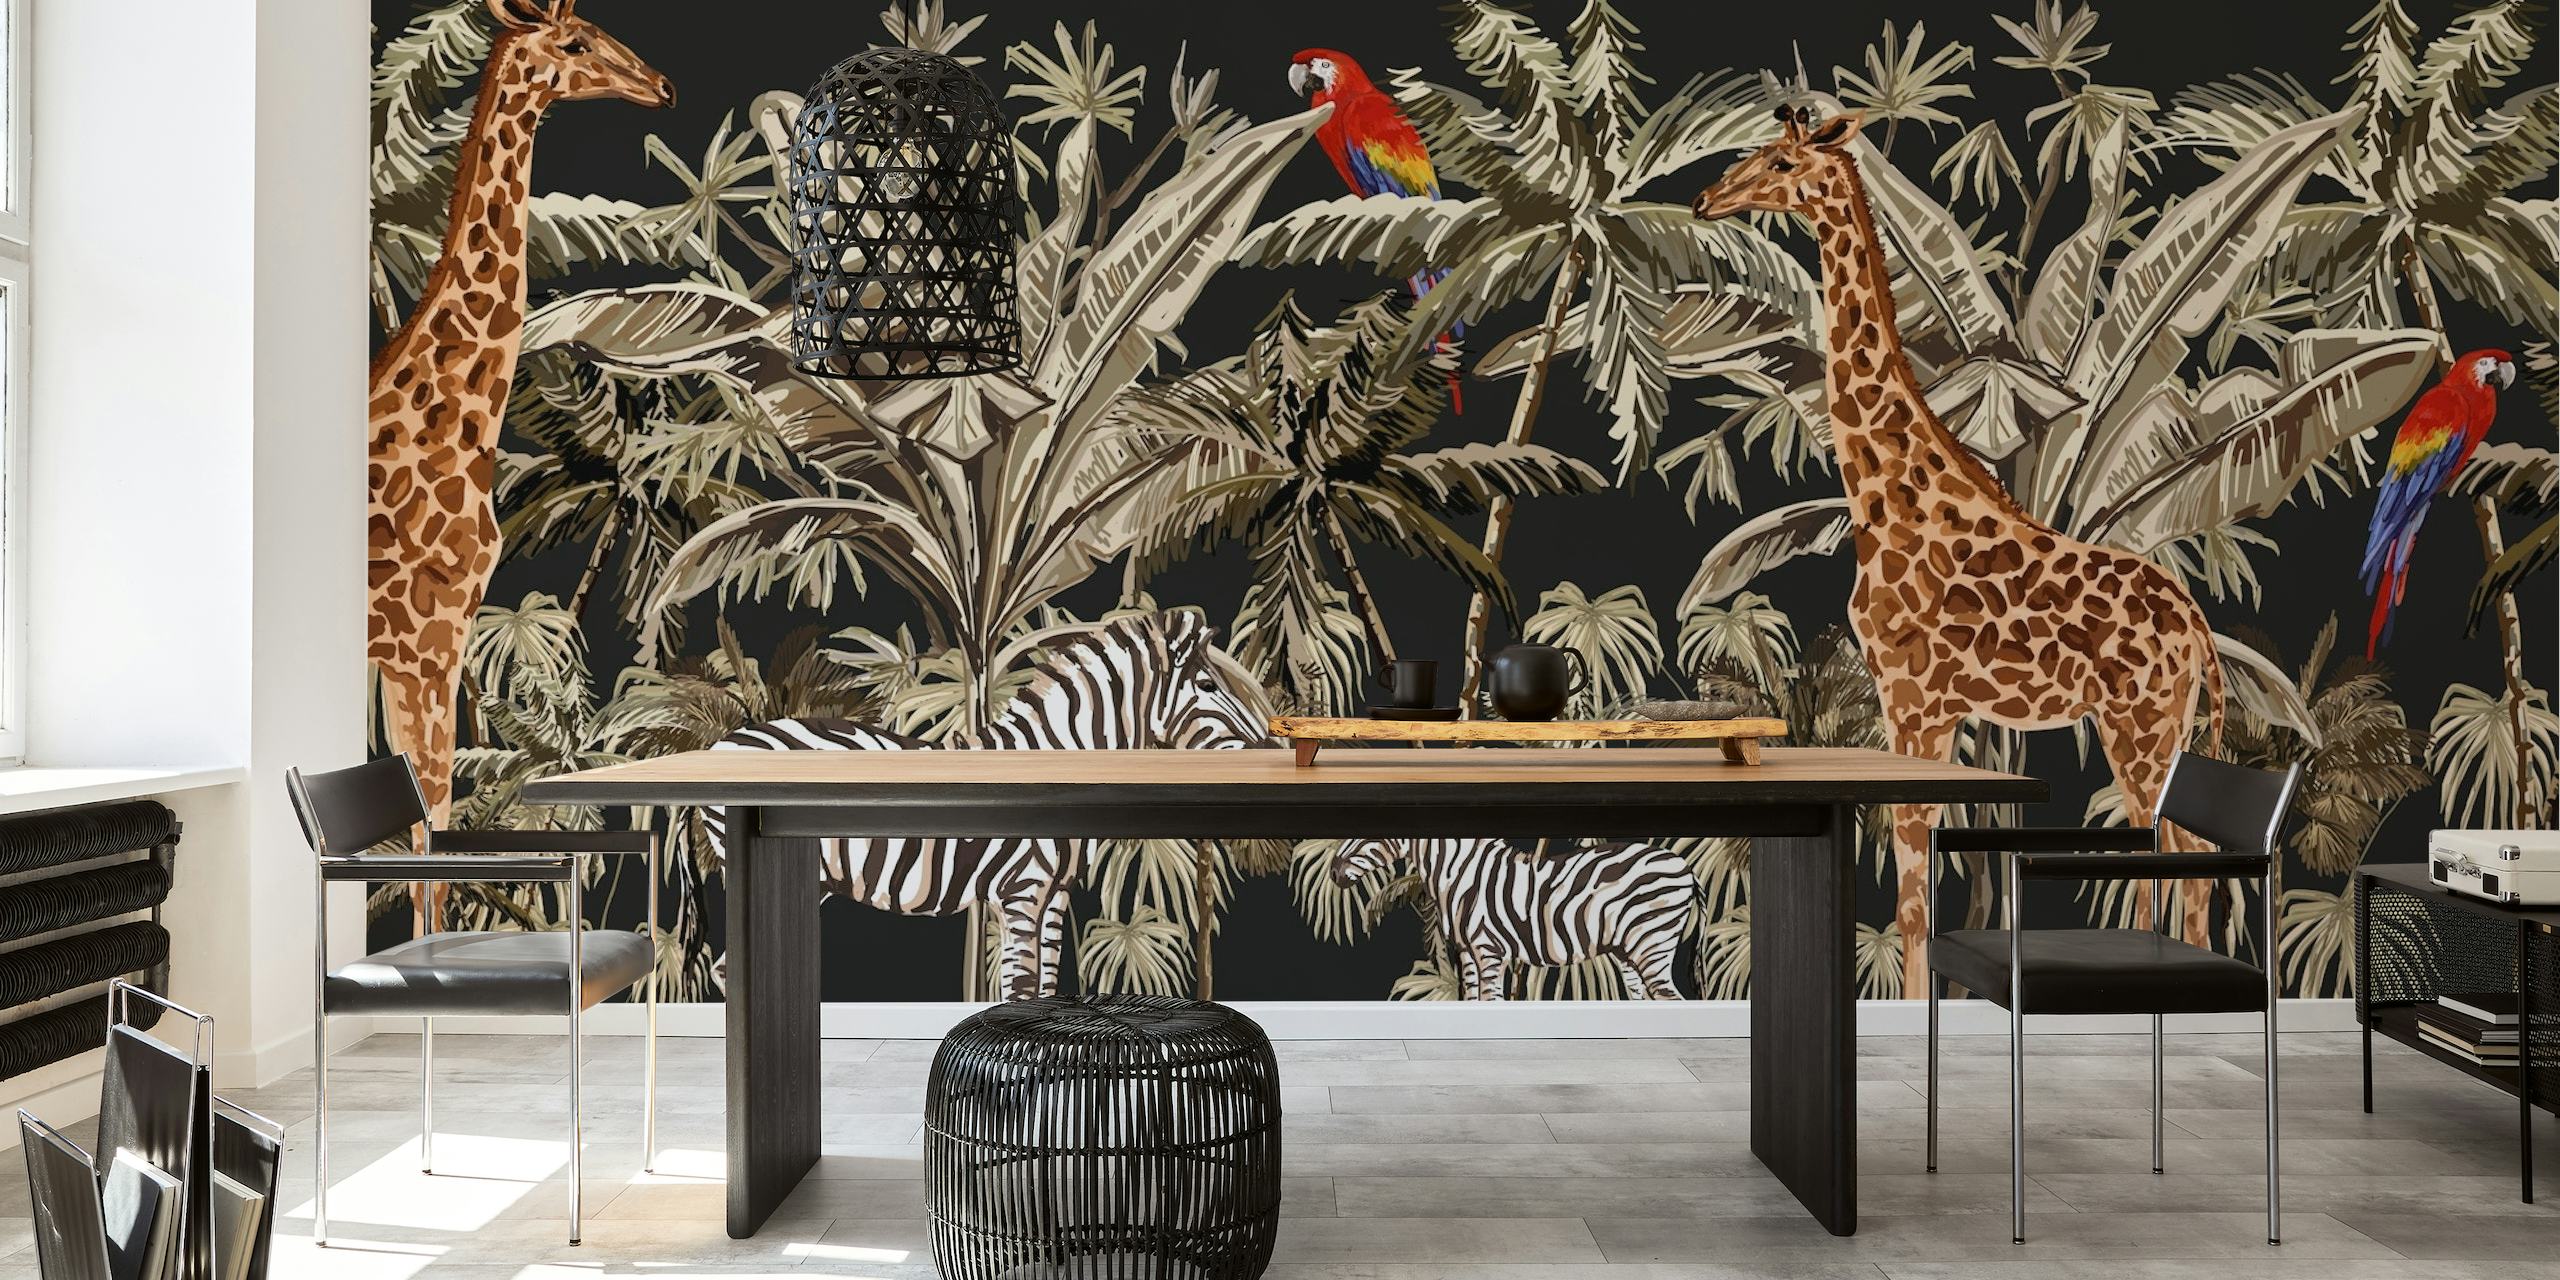 Mural de parede de girafas e zebras entre palmeiras em um fundo preto